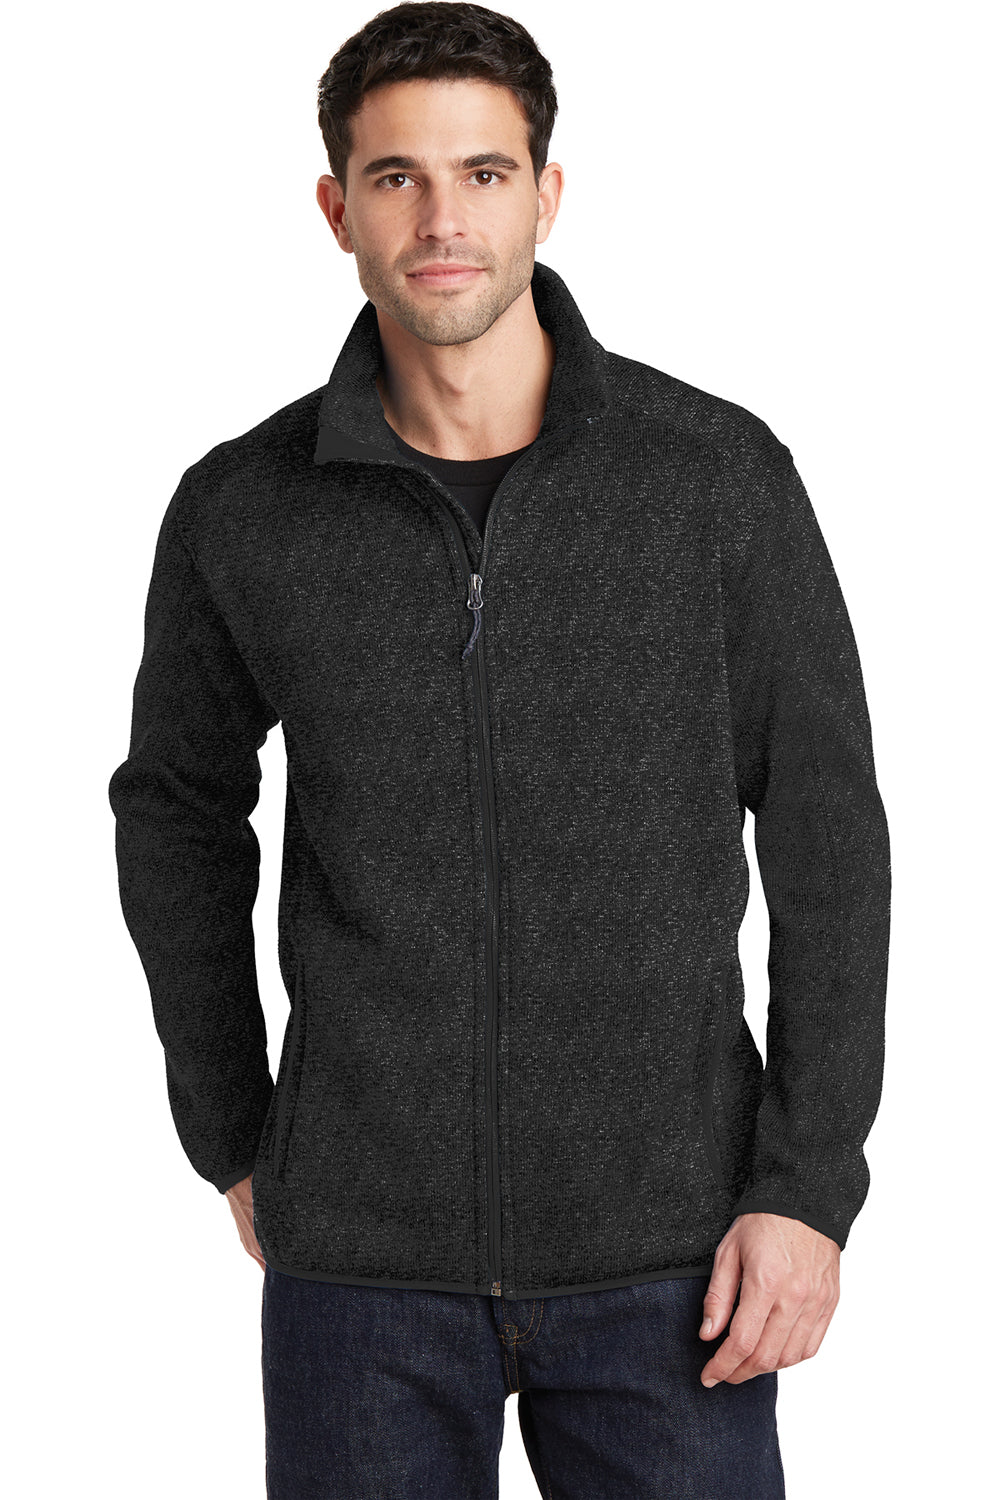 Port Authority F232 Mens Full Zip Sweater Fleece Jacket Heather Black Front